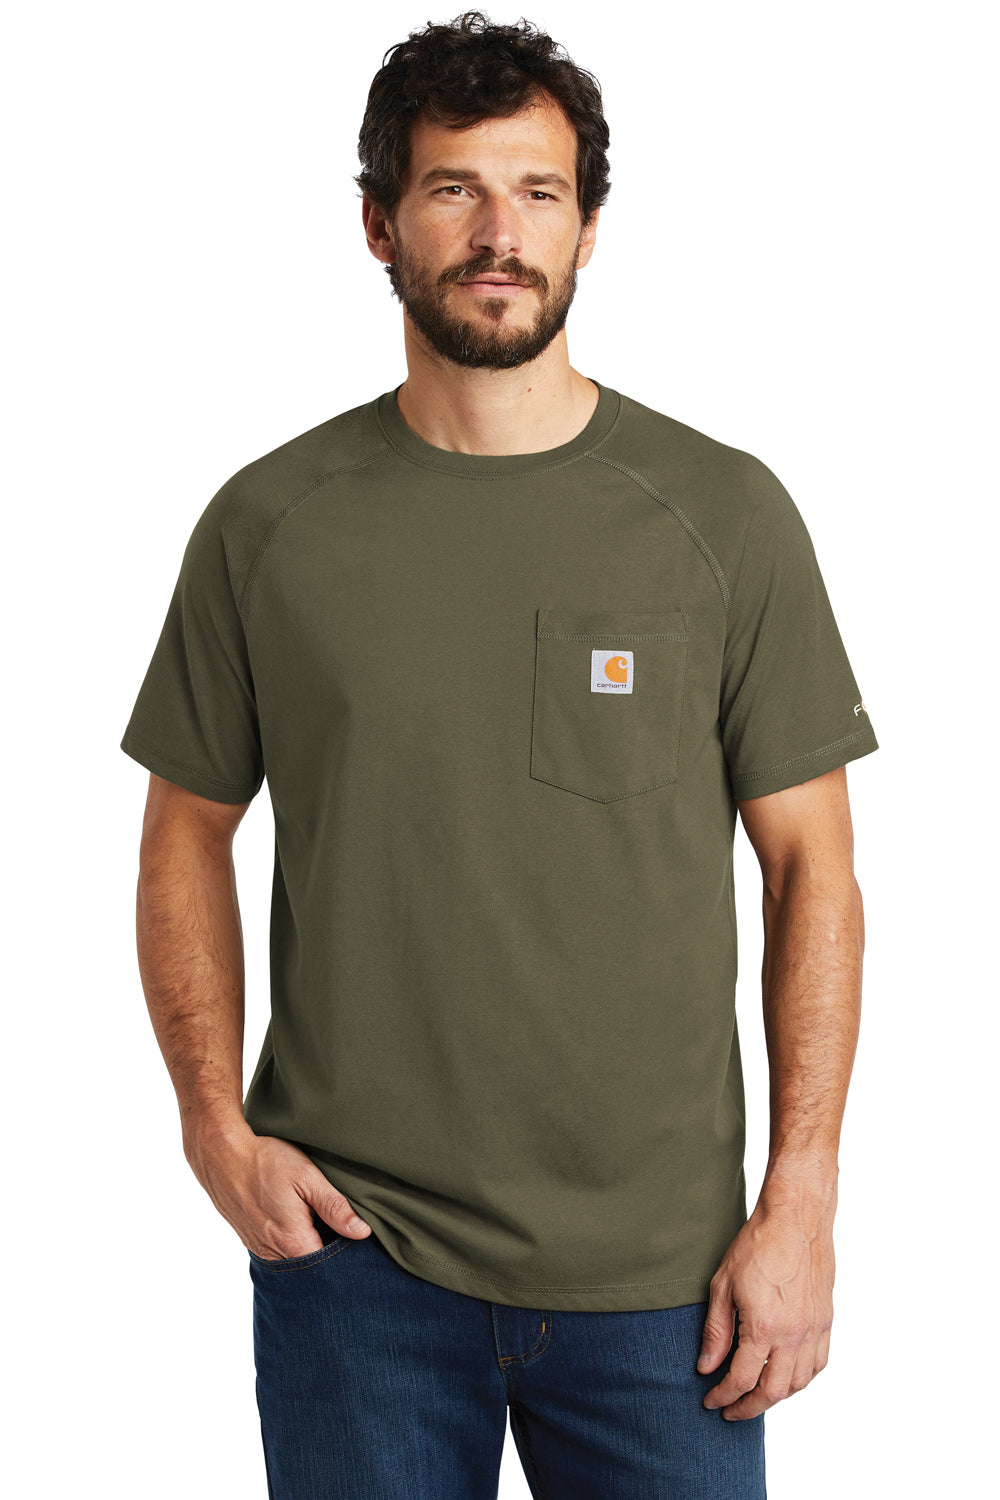 Carhartt CT100410 Mens Delmont Moisture Wicking Short Sleeve Crewneck T-Shirt w/ Pocket Moss Green Front